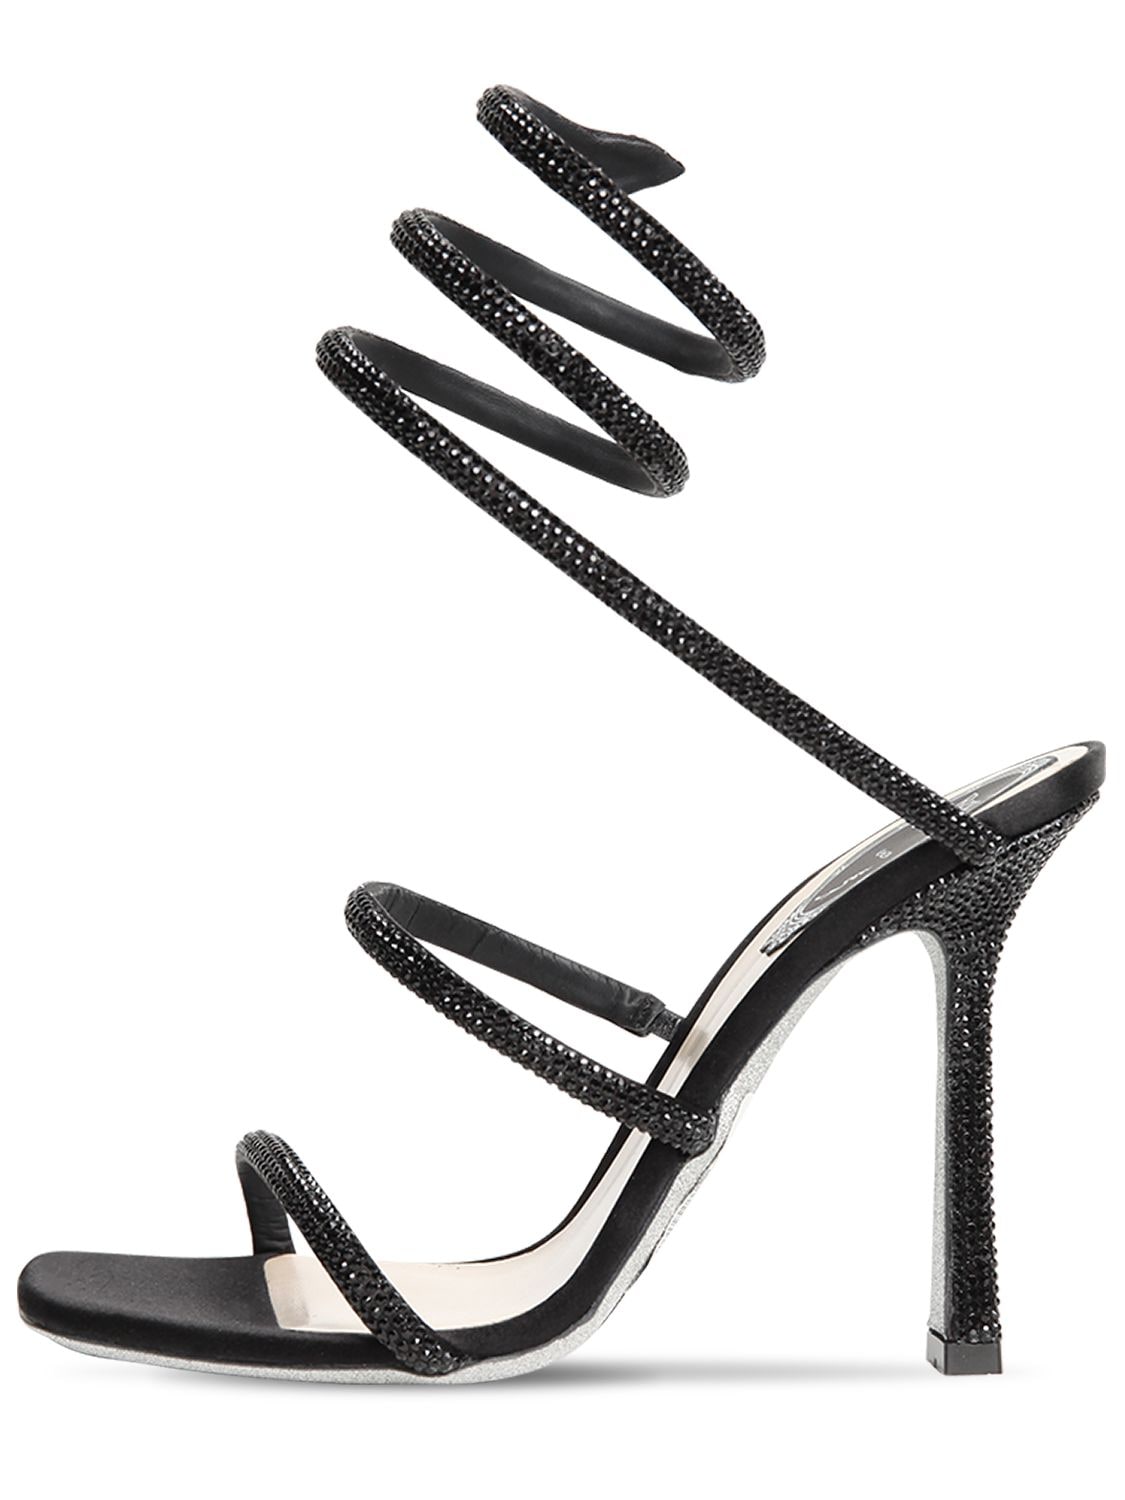 René Caovilla 105mm Embellished Satin Sandals In Black